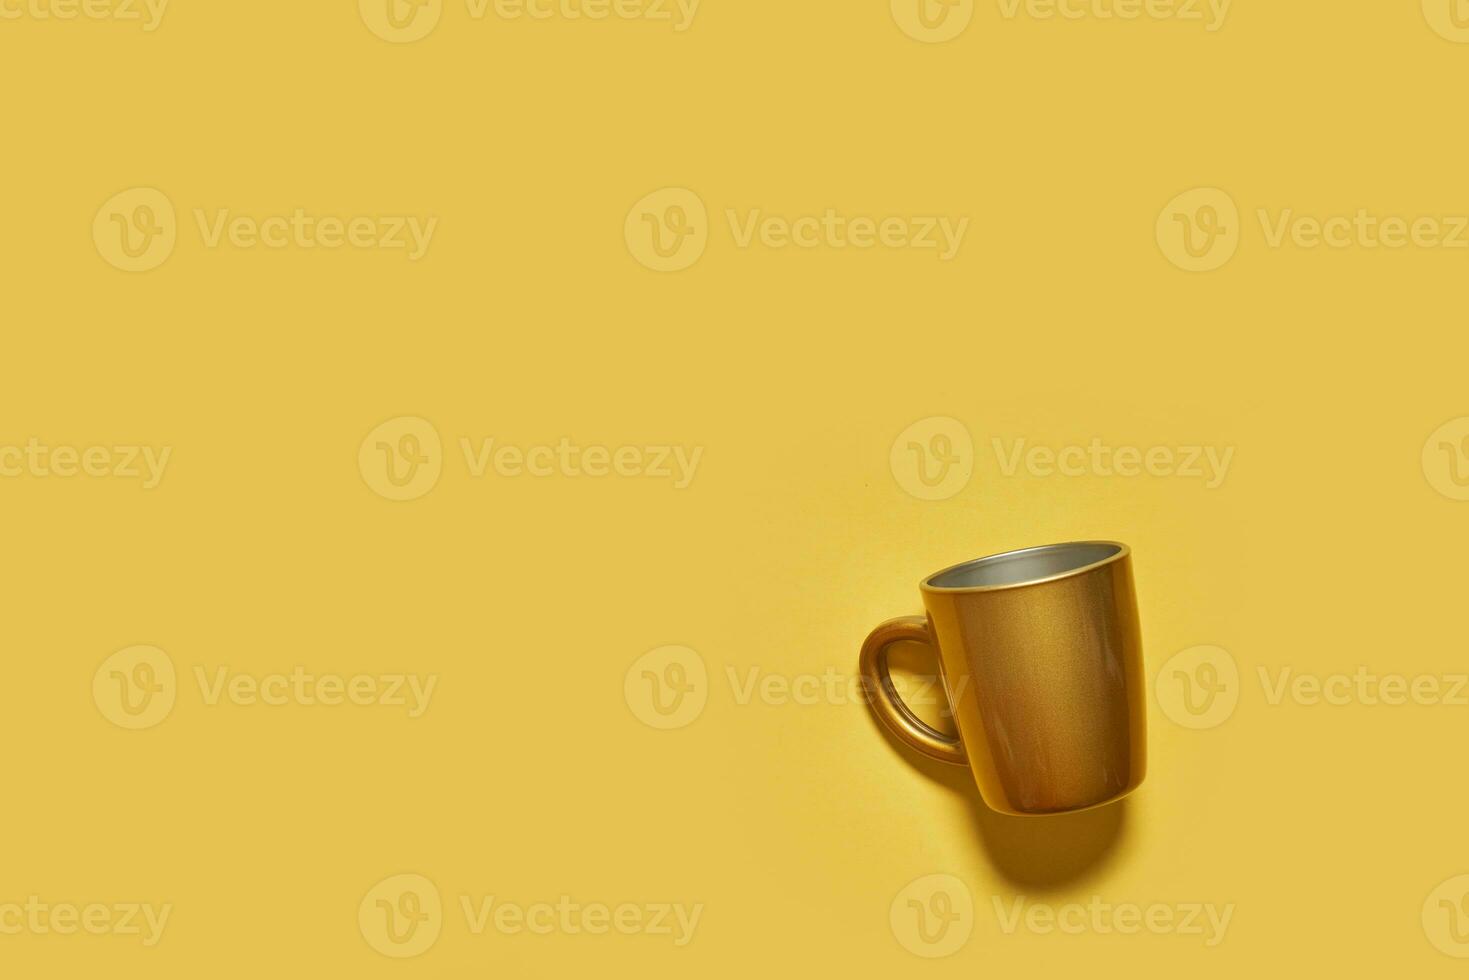 dorado bebida taza en amarillo antecedentes foto